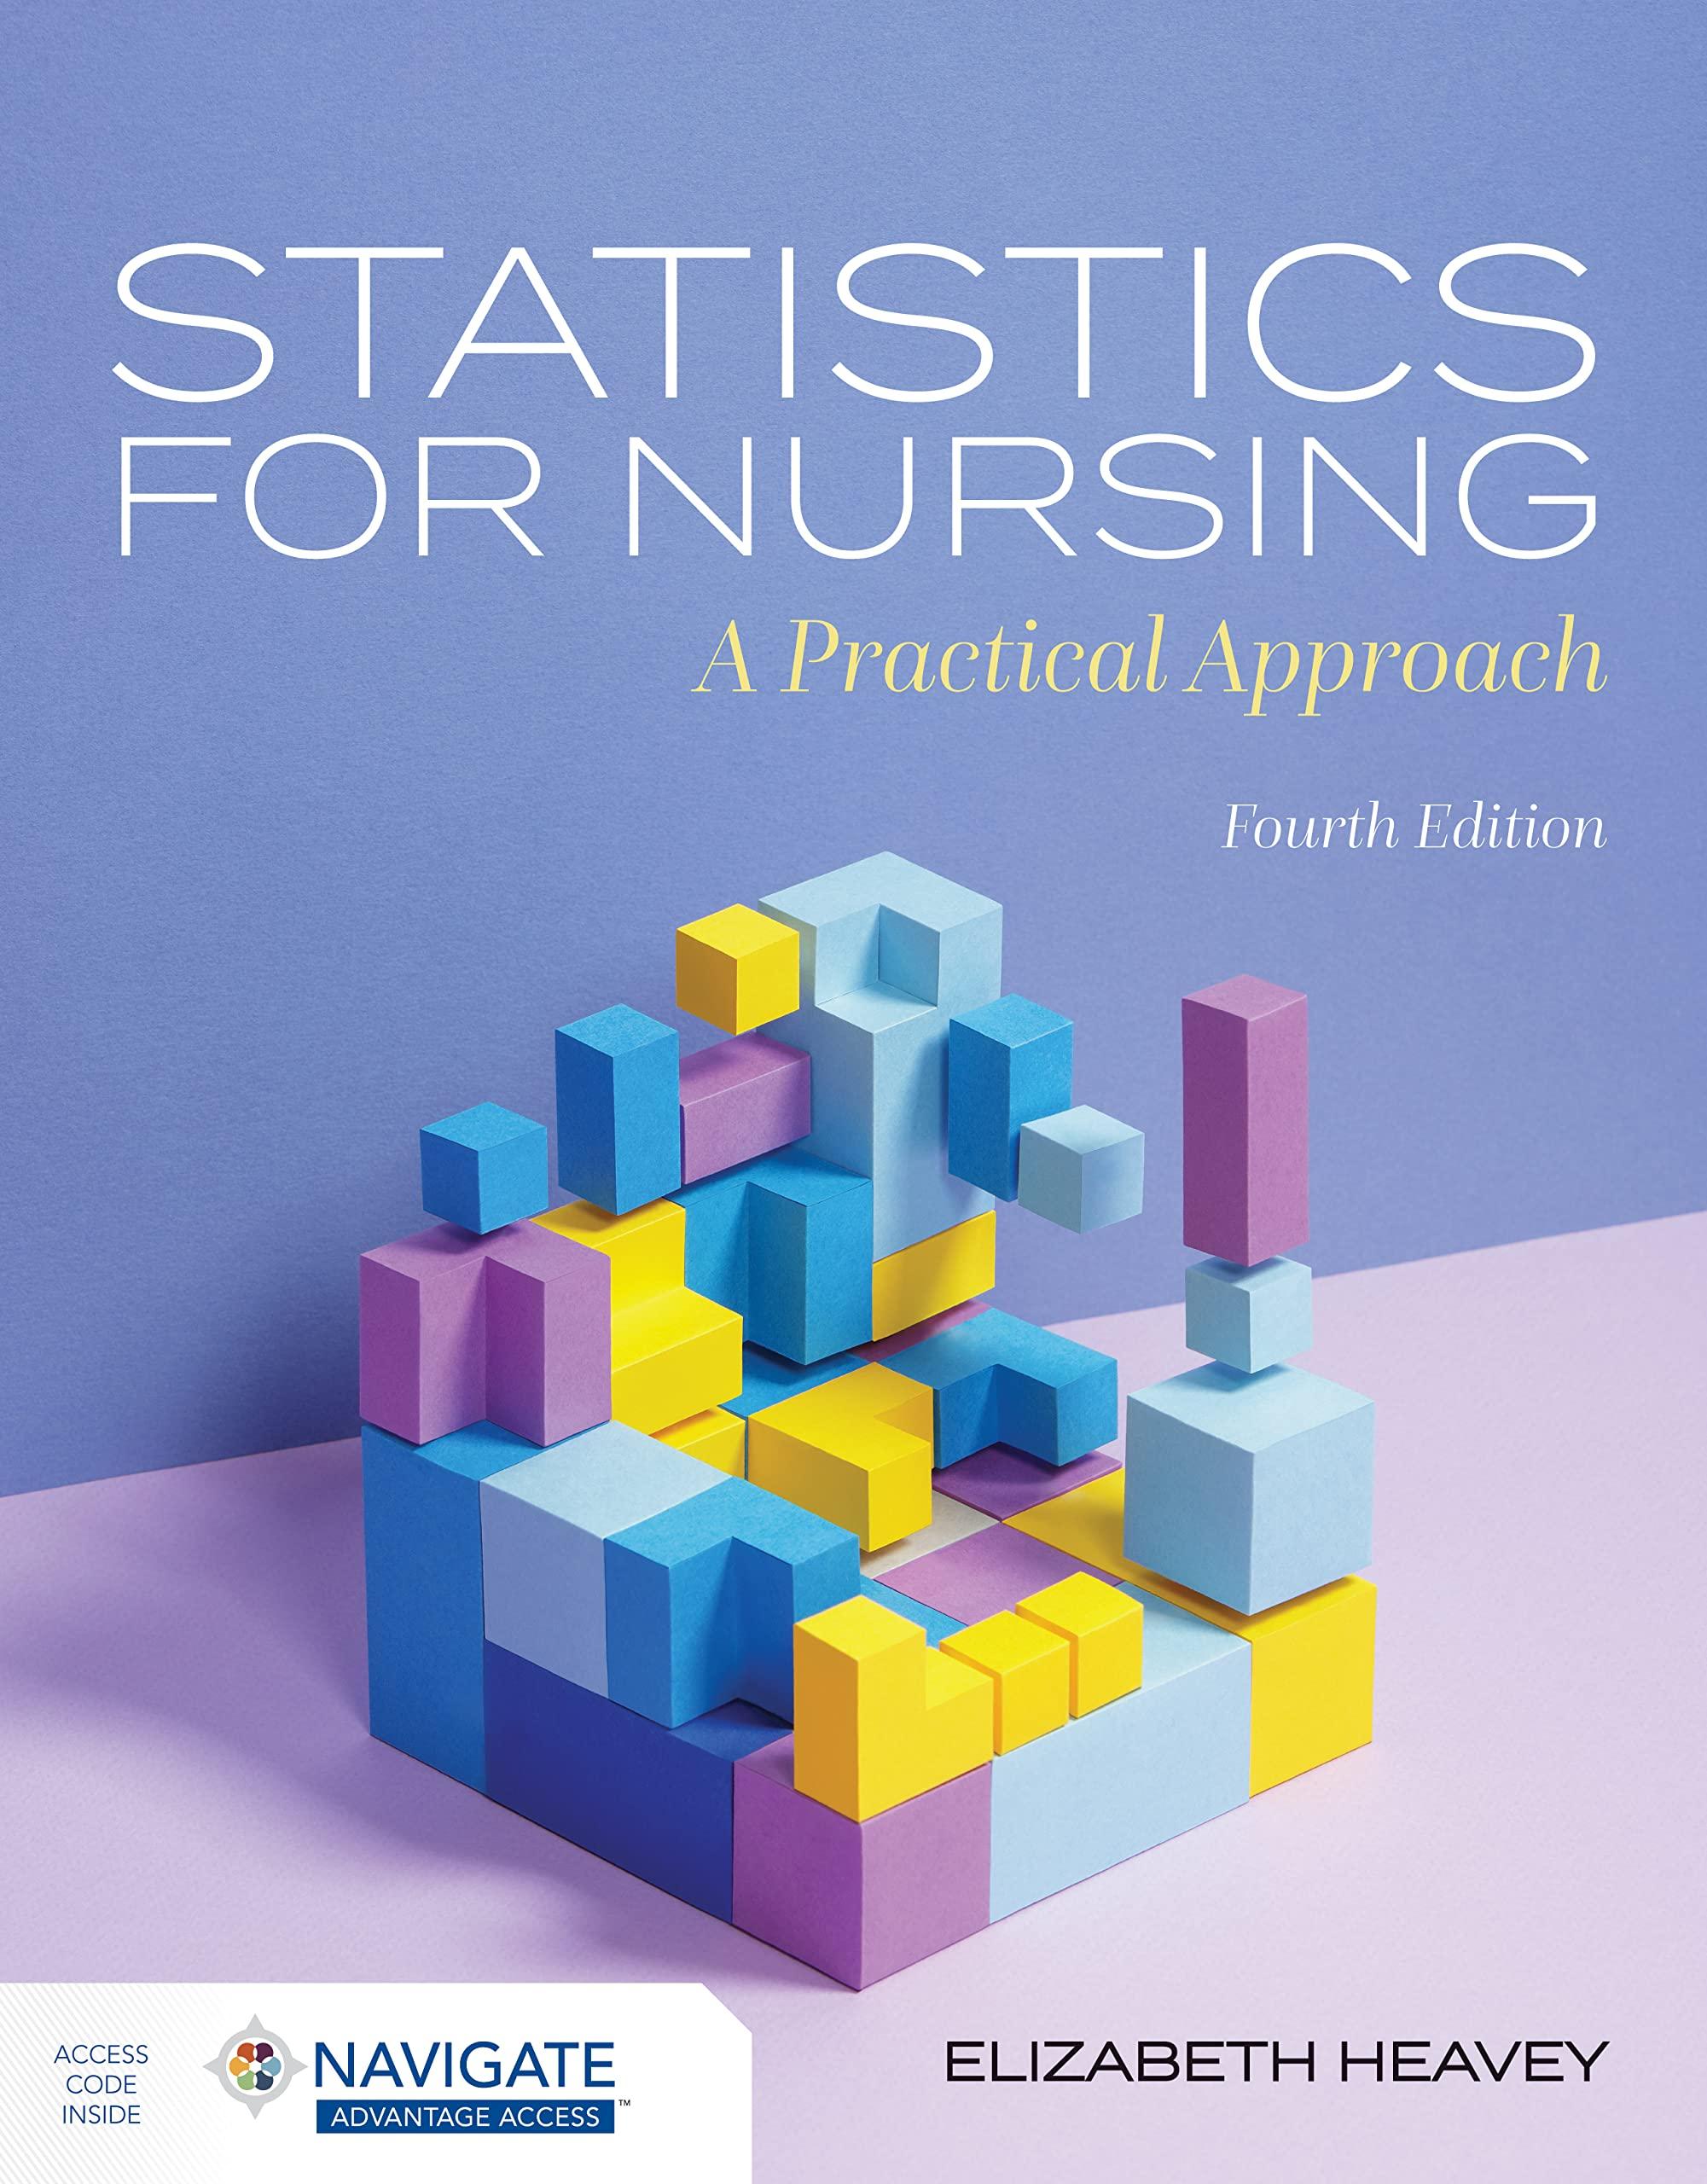 statistics for nursing a practical approach 4th edition elizabeth heavey 1284254909, 9781284254907